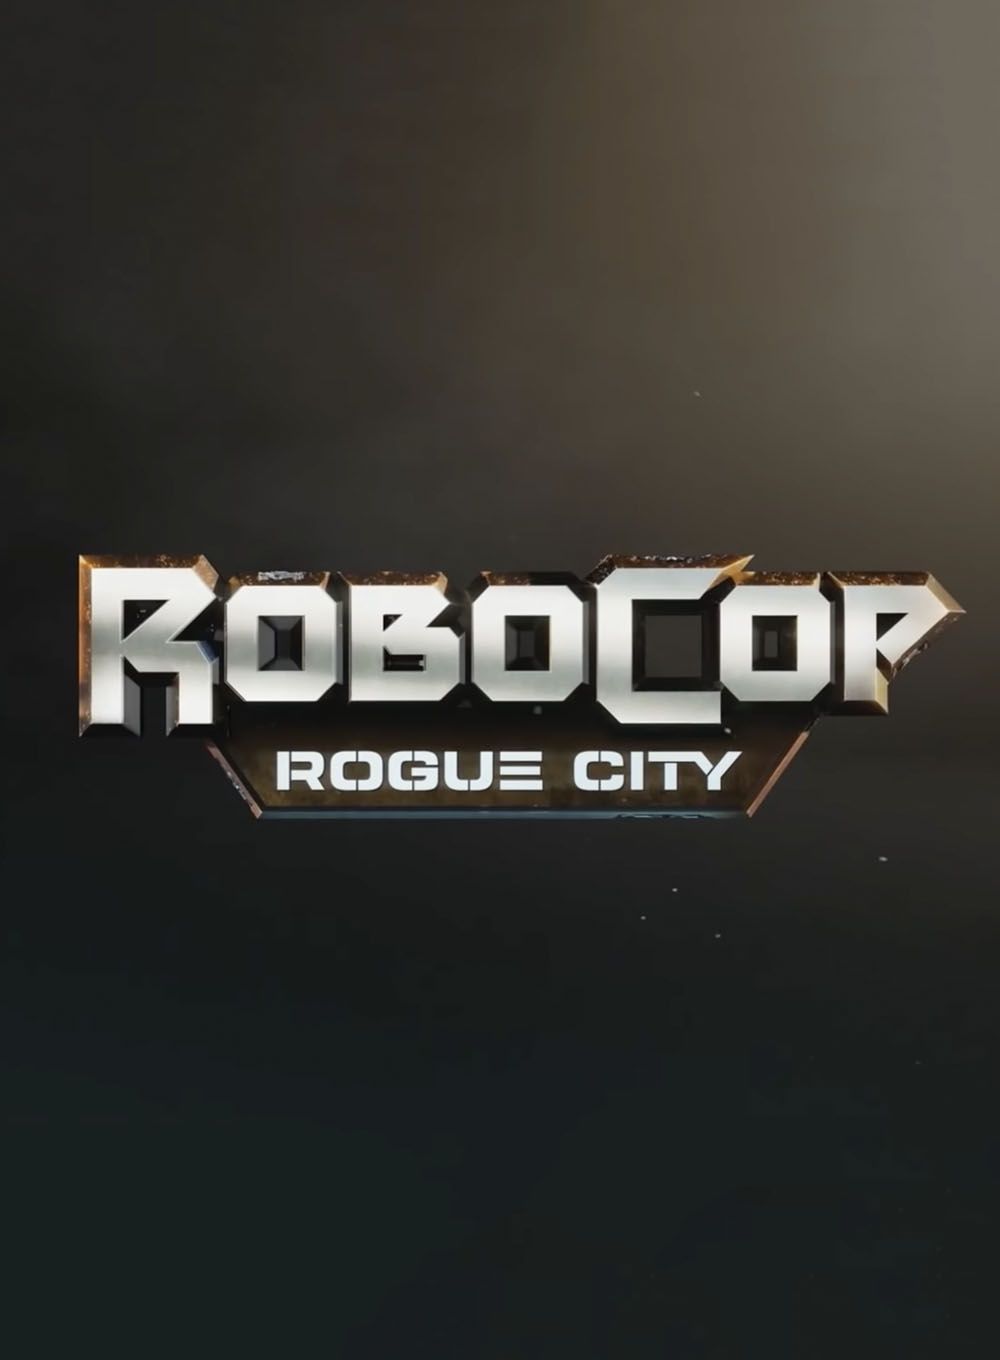 RoboCop: Rogue City instal the last version for ios